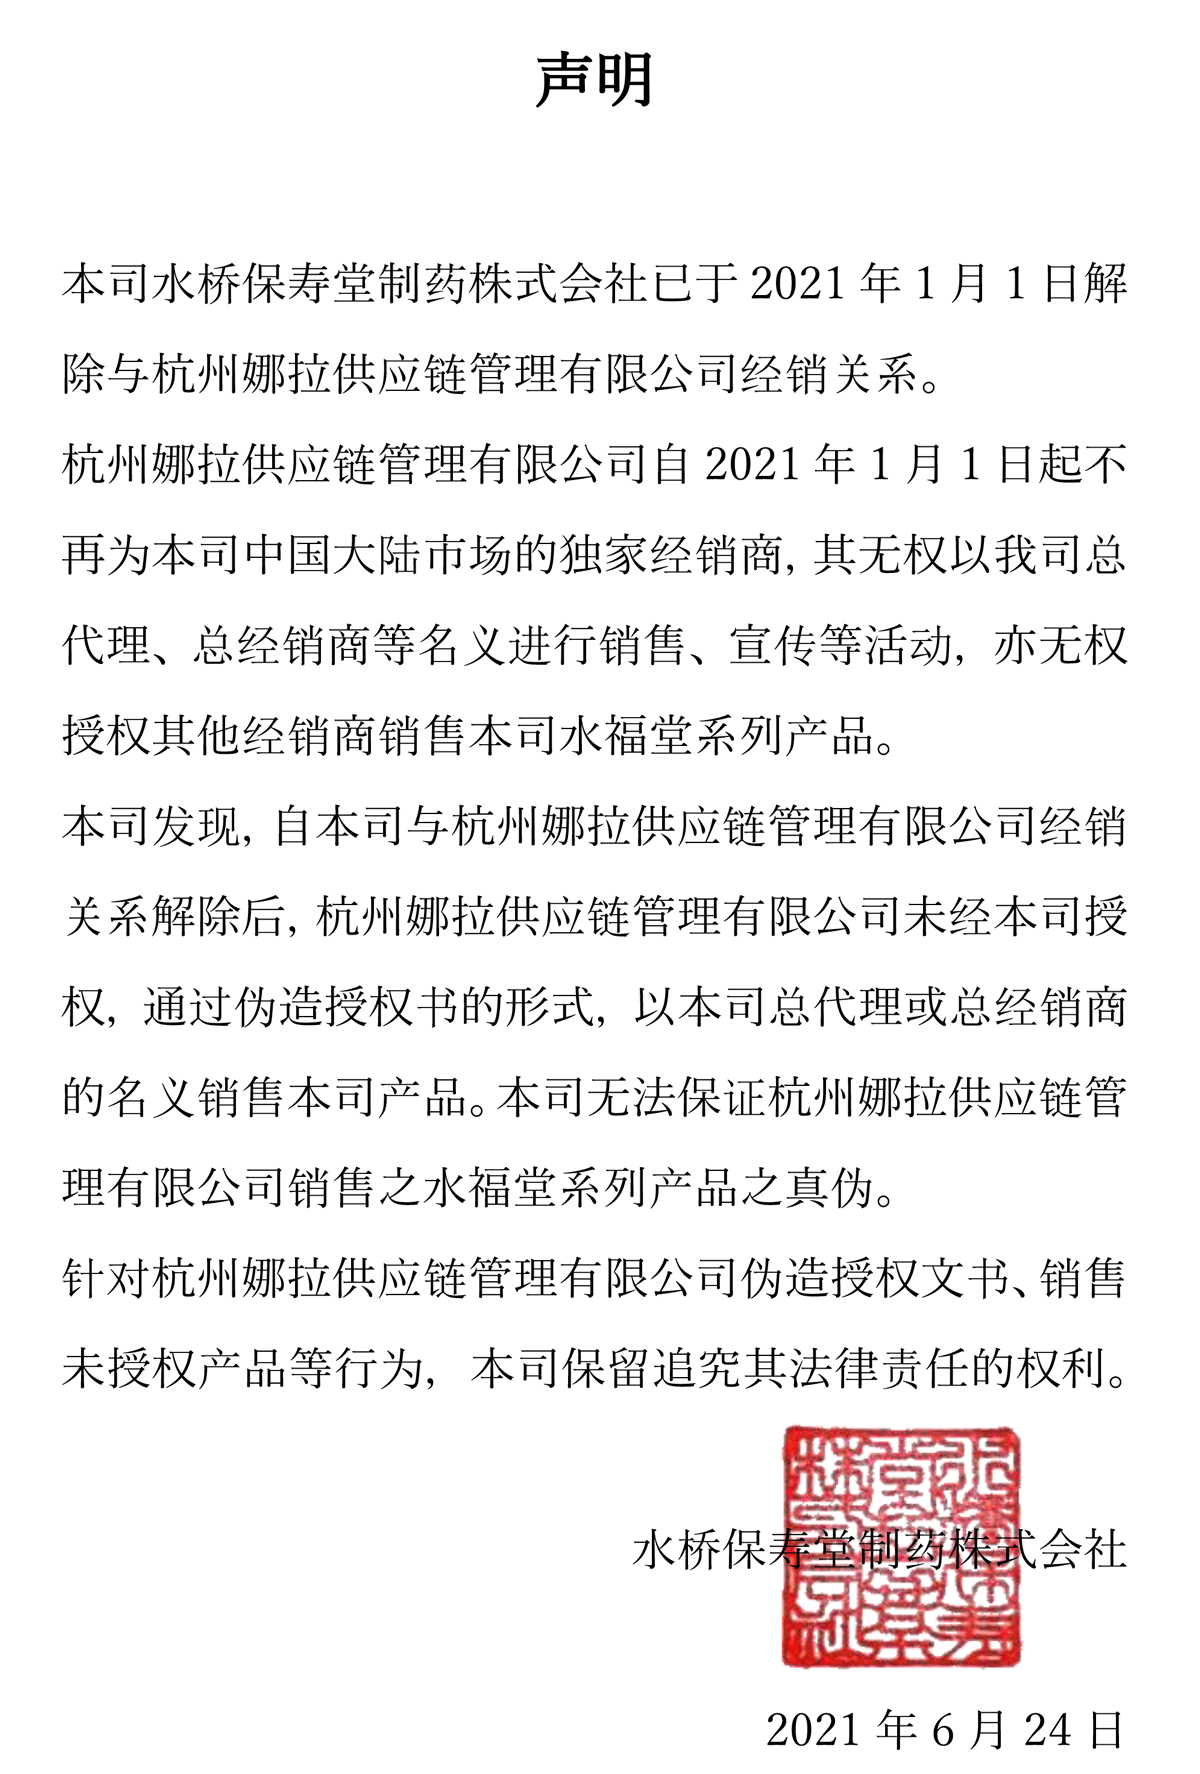 关于杭州娜拉供应链管理有限公司的声明